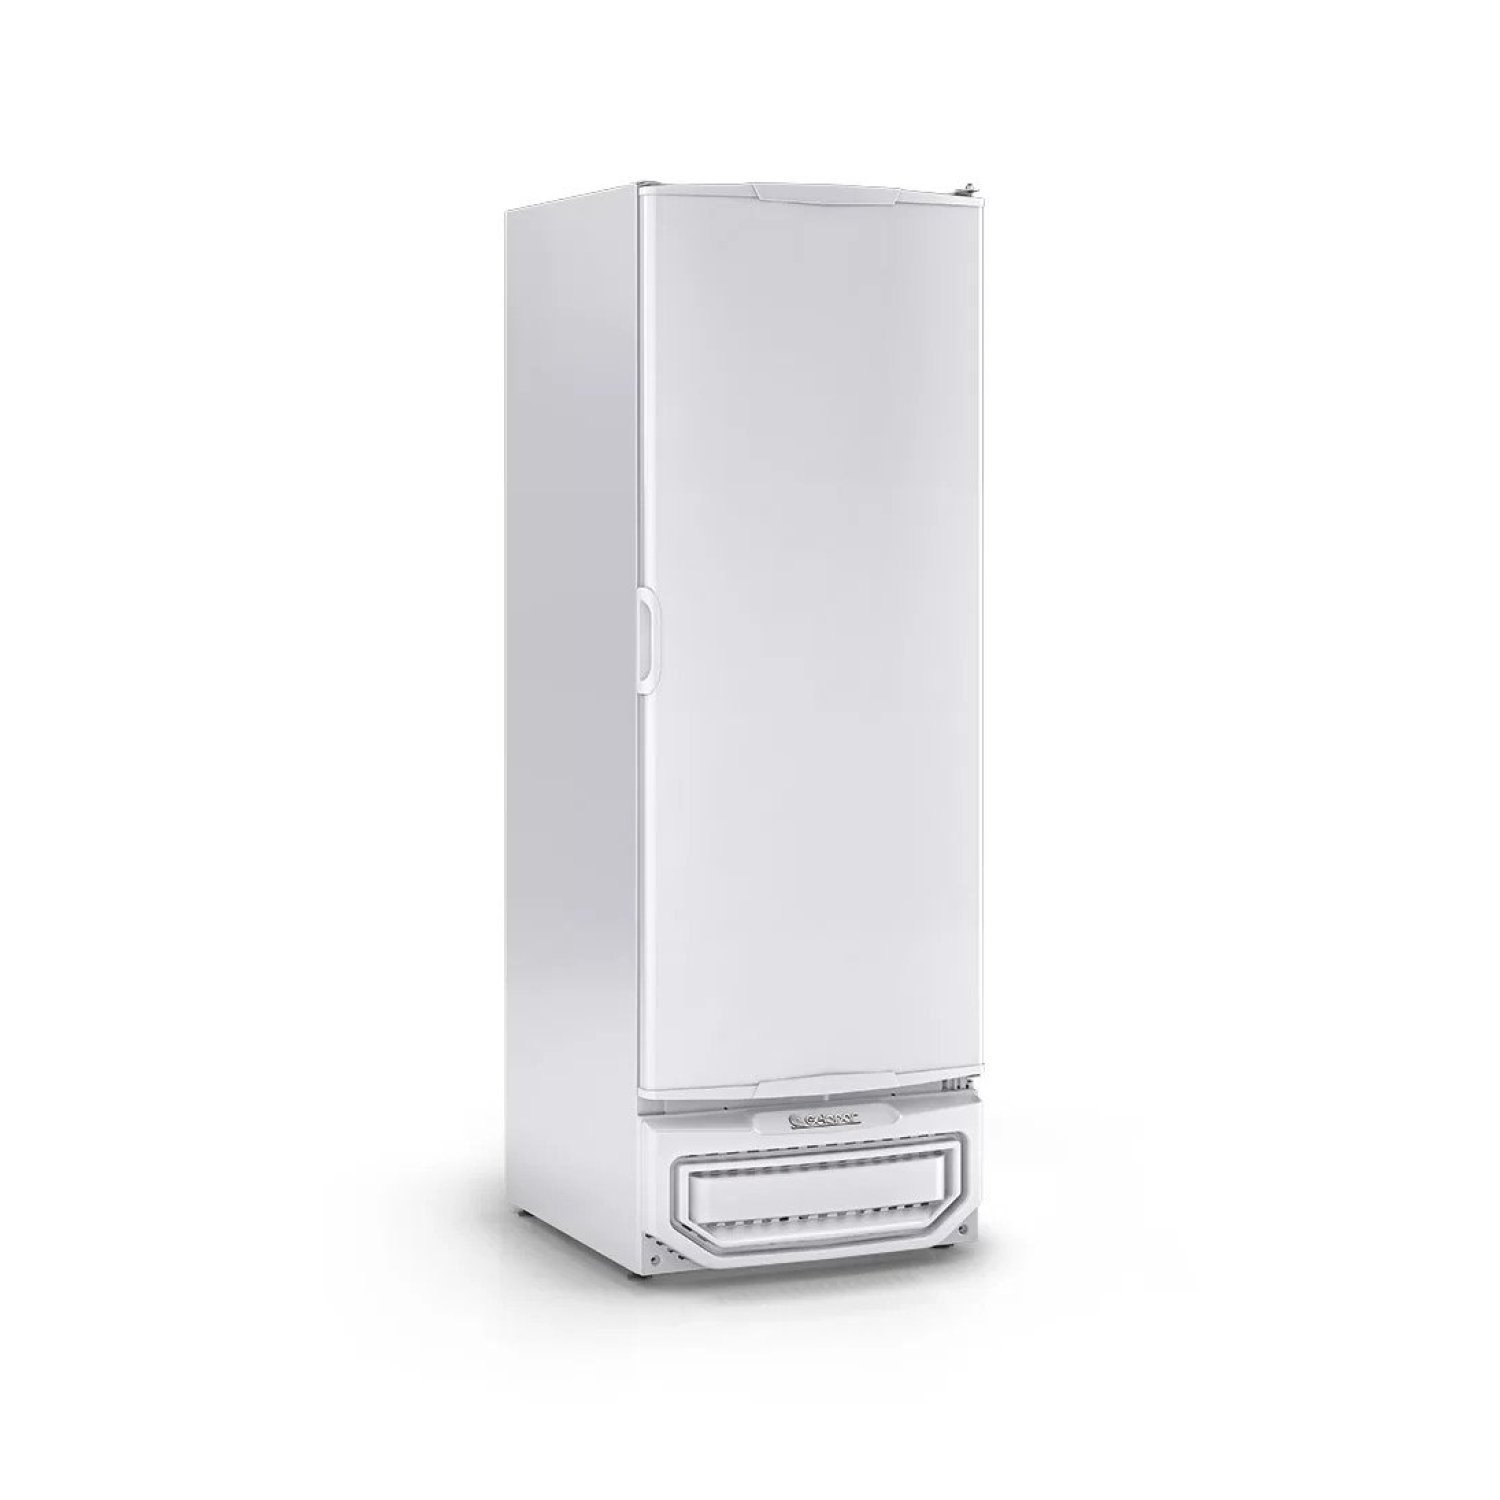 Freezer/Refrigerador Vertical Tripla Ação 577 litros Porta Cega GPC-57 TE BR Gelopar 220V